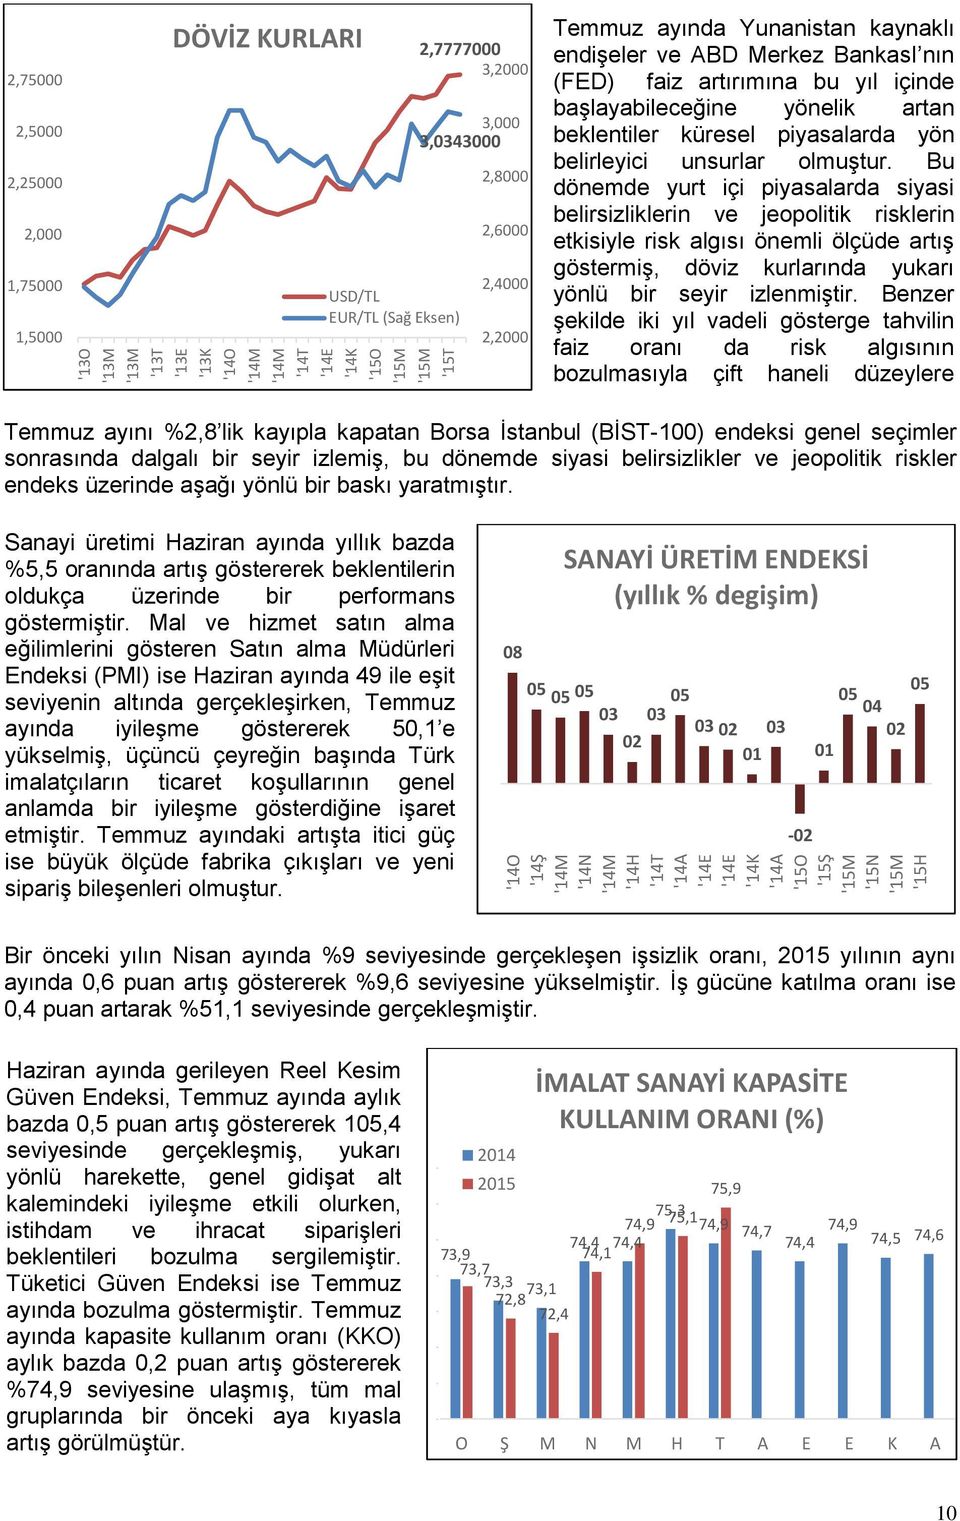 Temmuz ayını %2,8 lik kayıpla kapatan Borsa İstanbul (BİST-100) endeksi genel seçimler sonrasında dalgalı bir seyir izlemiş, bu dönemde siyasi belirsizlikler ve jeopolitik riskler endeks üzerinde